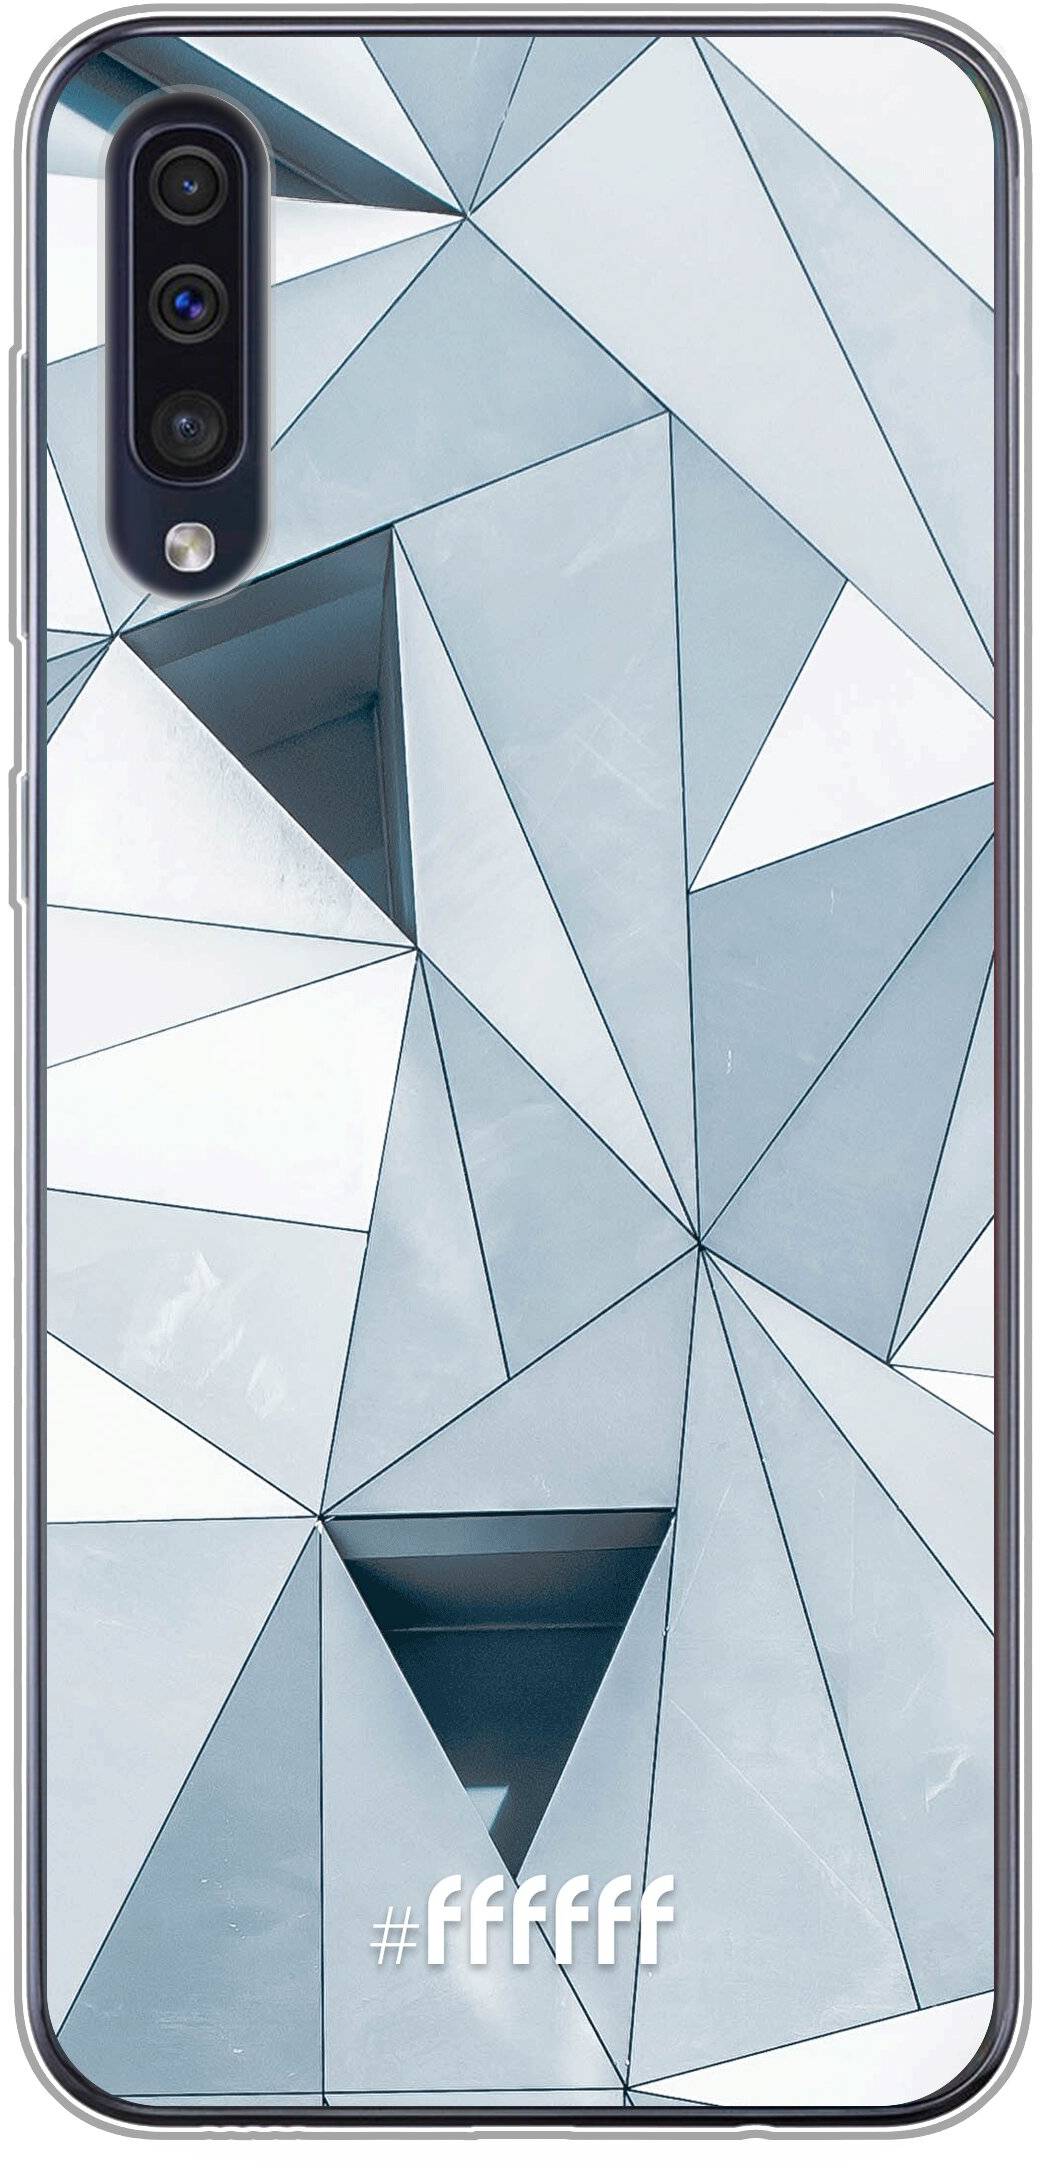 Mirrored Polygon Galaxy A50